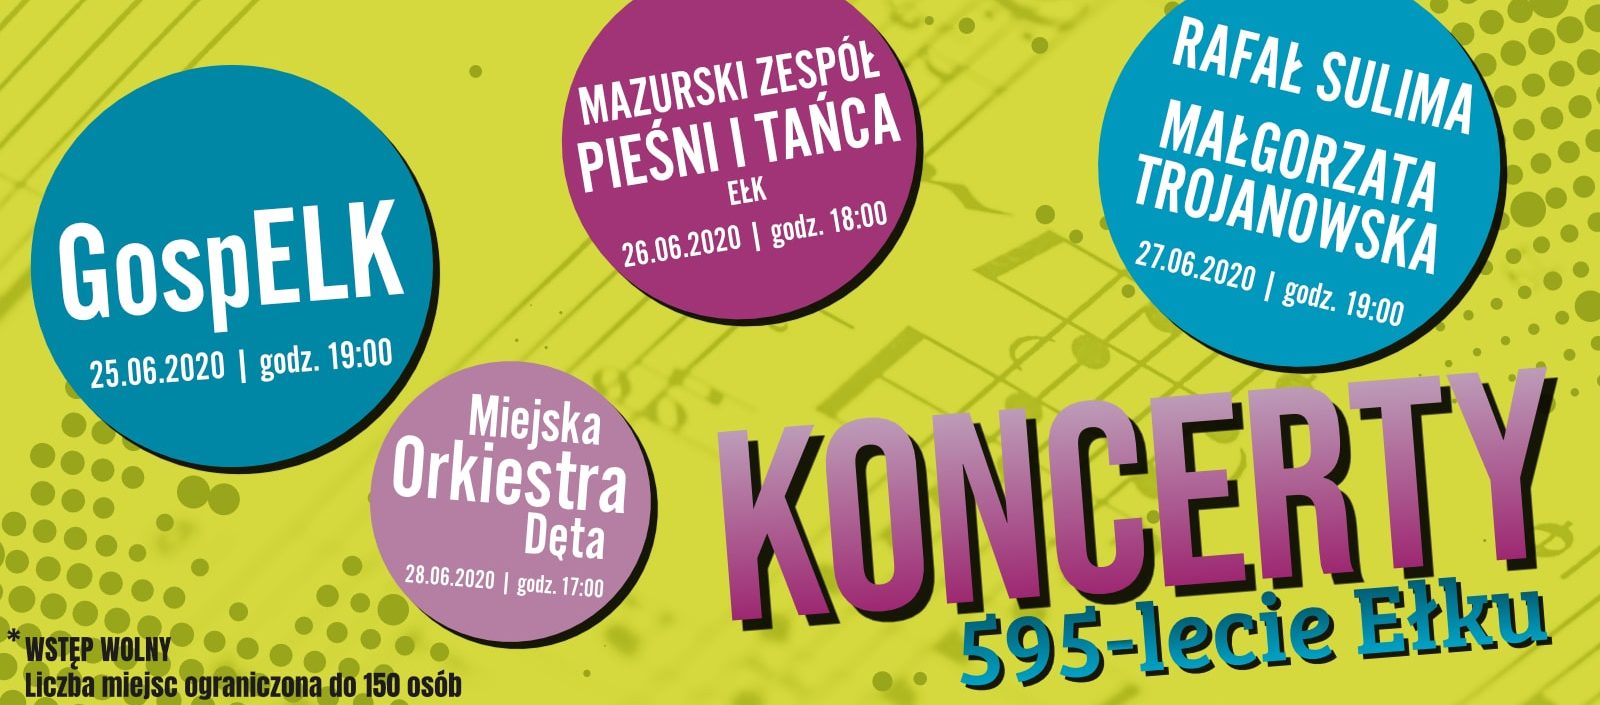 Koncert Miejskiej Orkiestry Dętej Lato 2020 – koncerty z okazji 595-lecia Ełku!